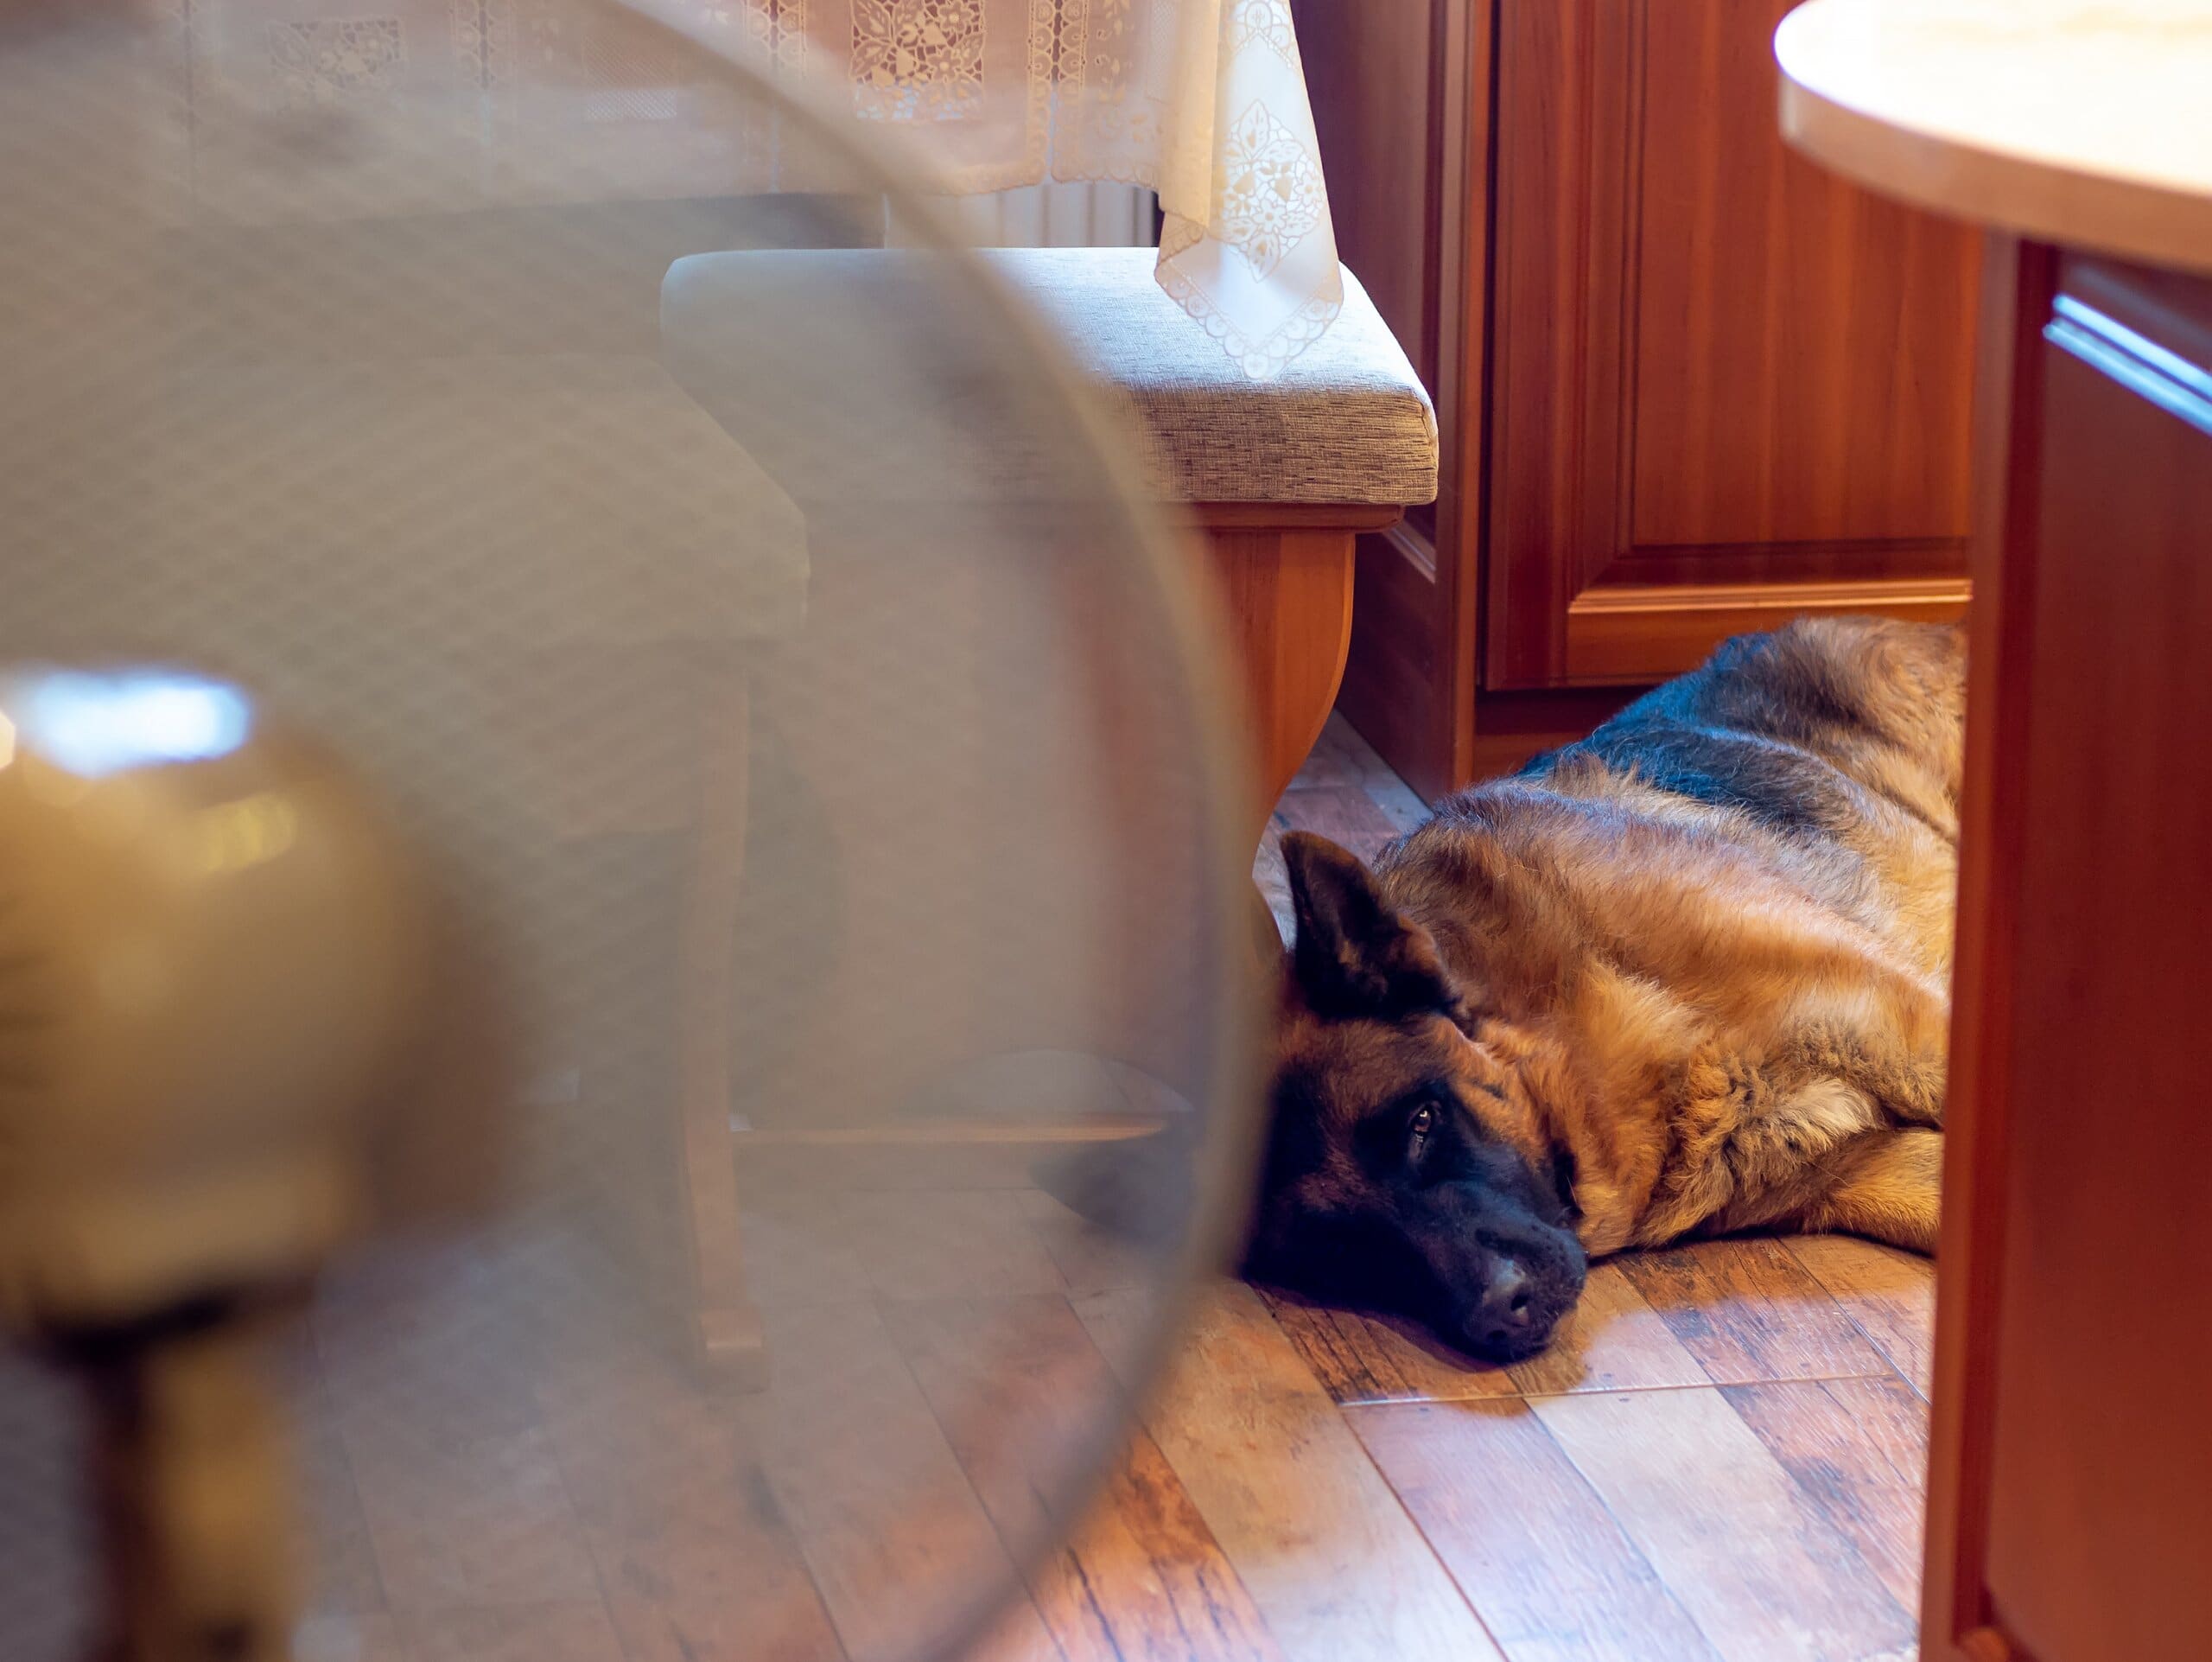 German Shepherd asleep in the corner of a kitchen in front of a fan.